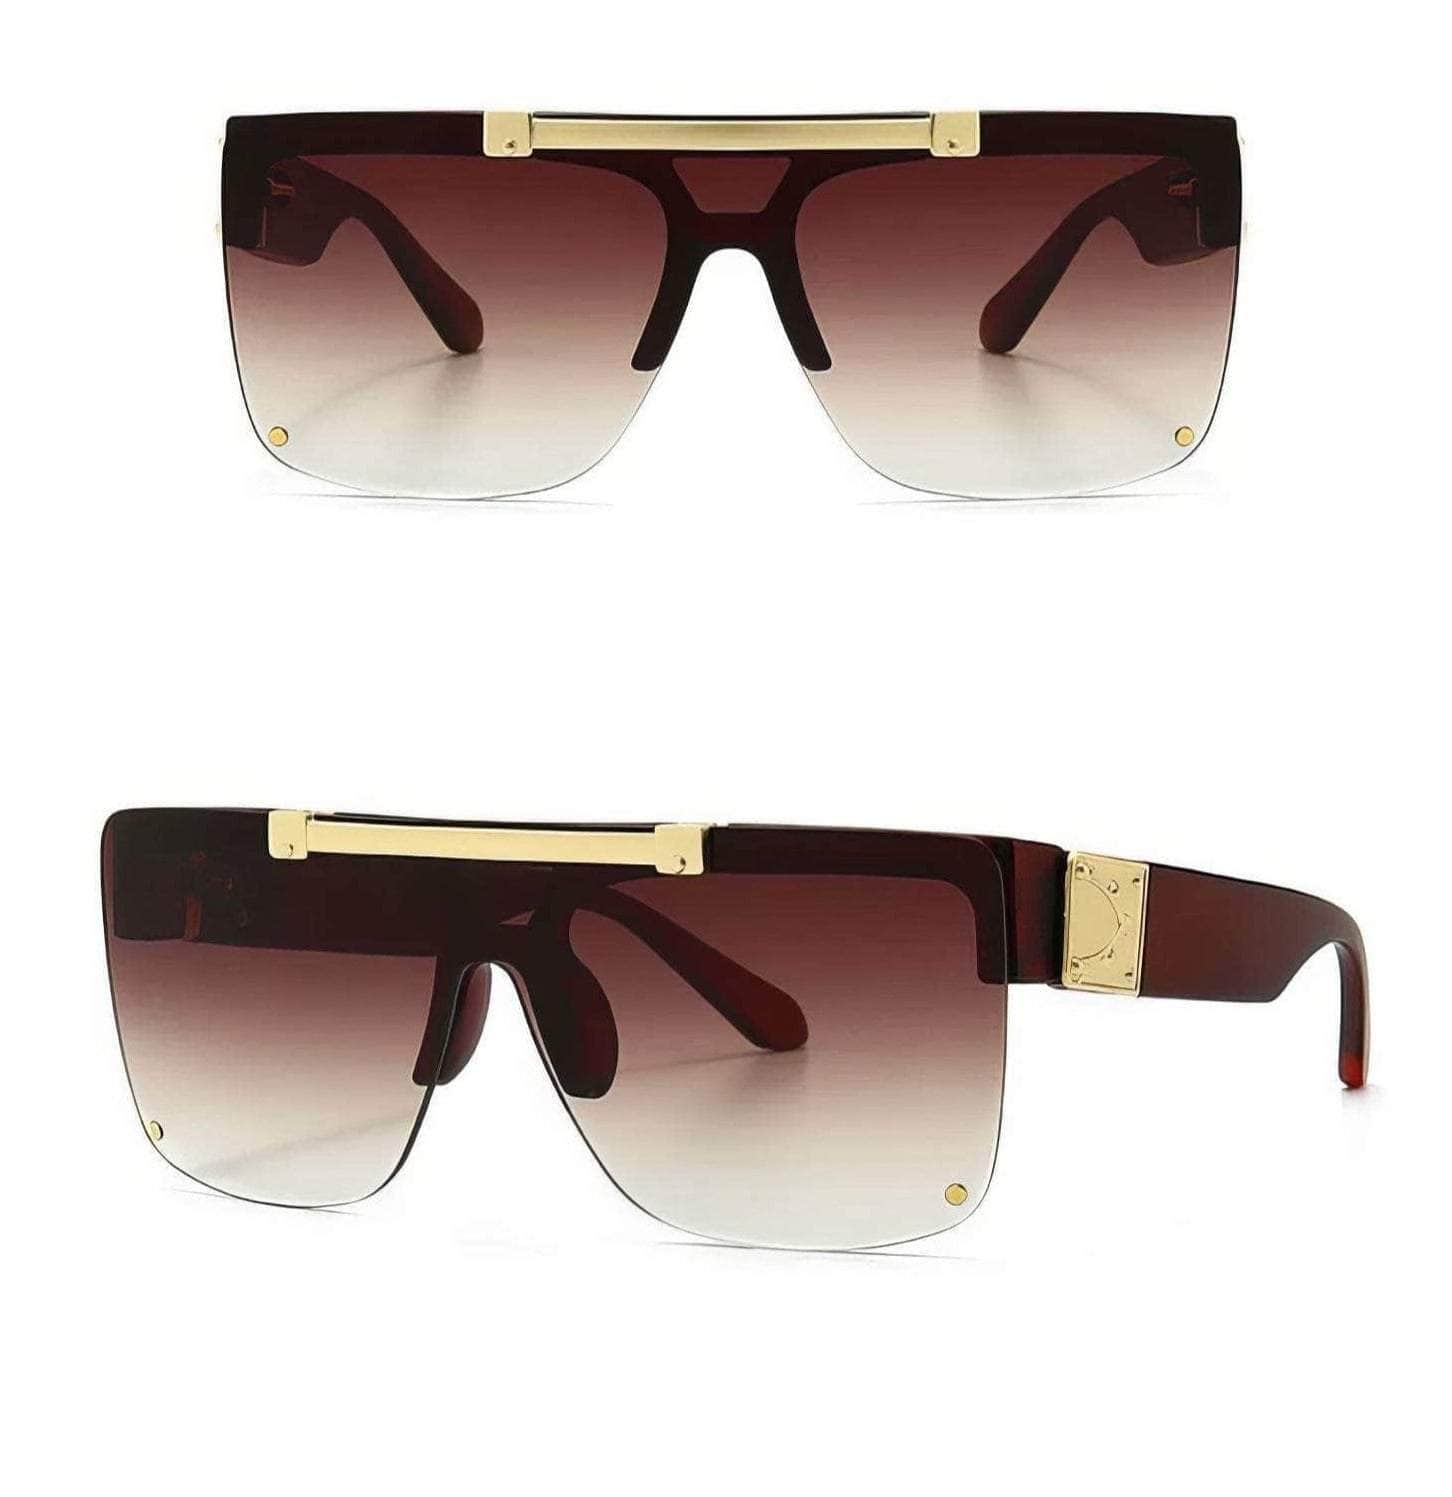 New Square Frame Sunglasses